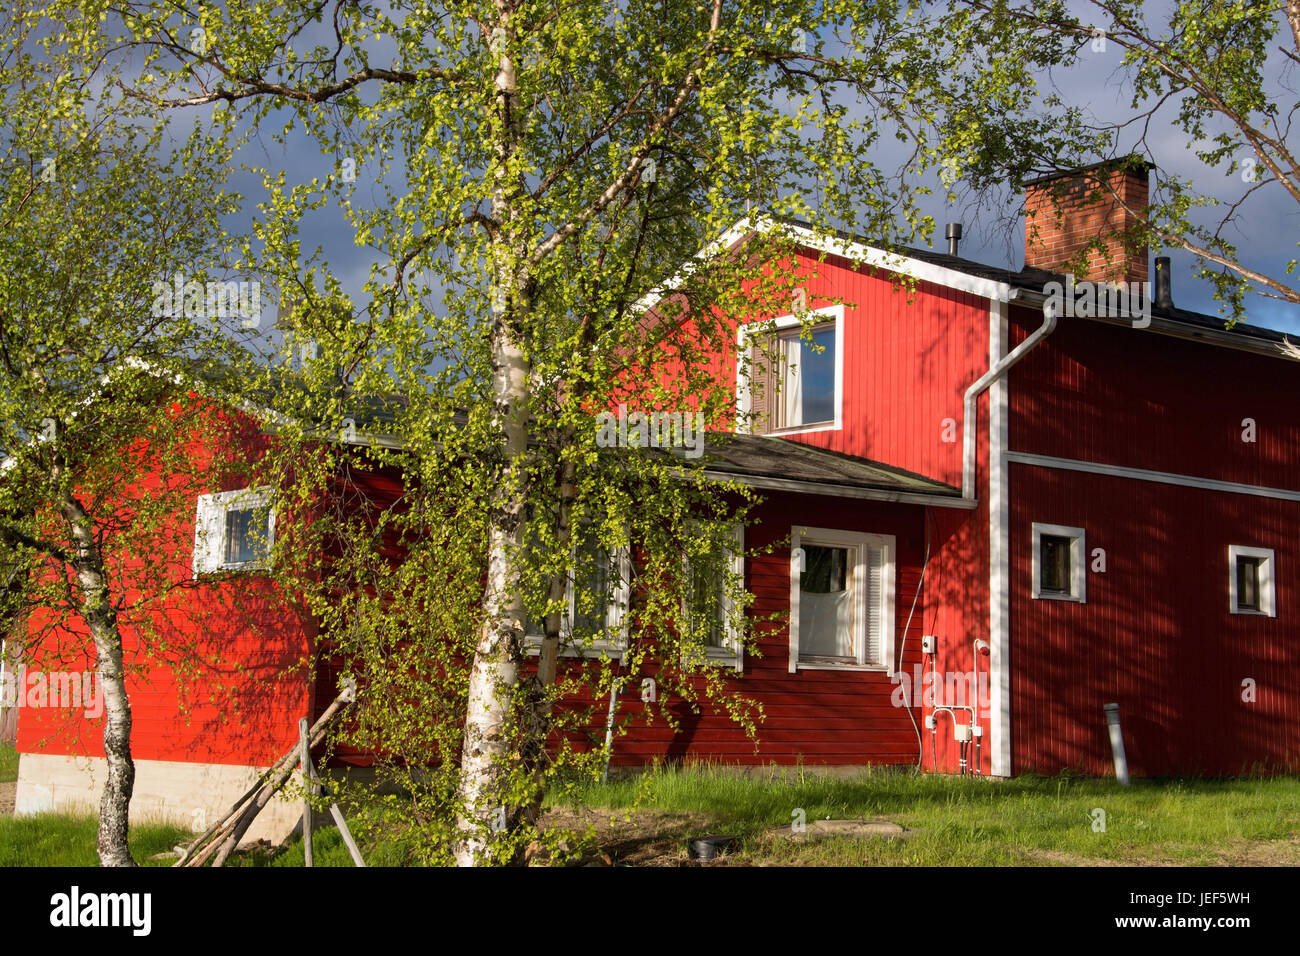 Typischen roten Holzhaus in Lappland, Finnland in den Abend Licht., Typisches Rotes Holzhaus in Lappland, Finnland Im Abendlicht. Stockfoto